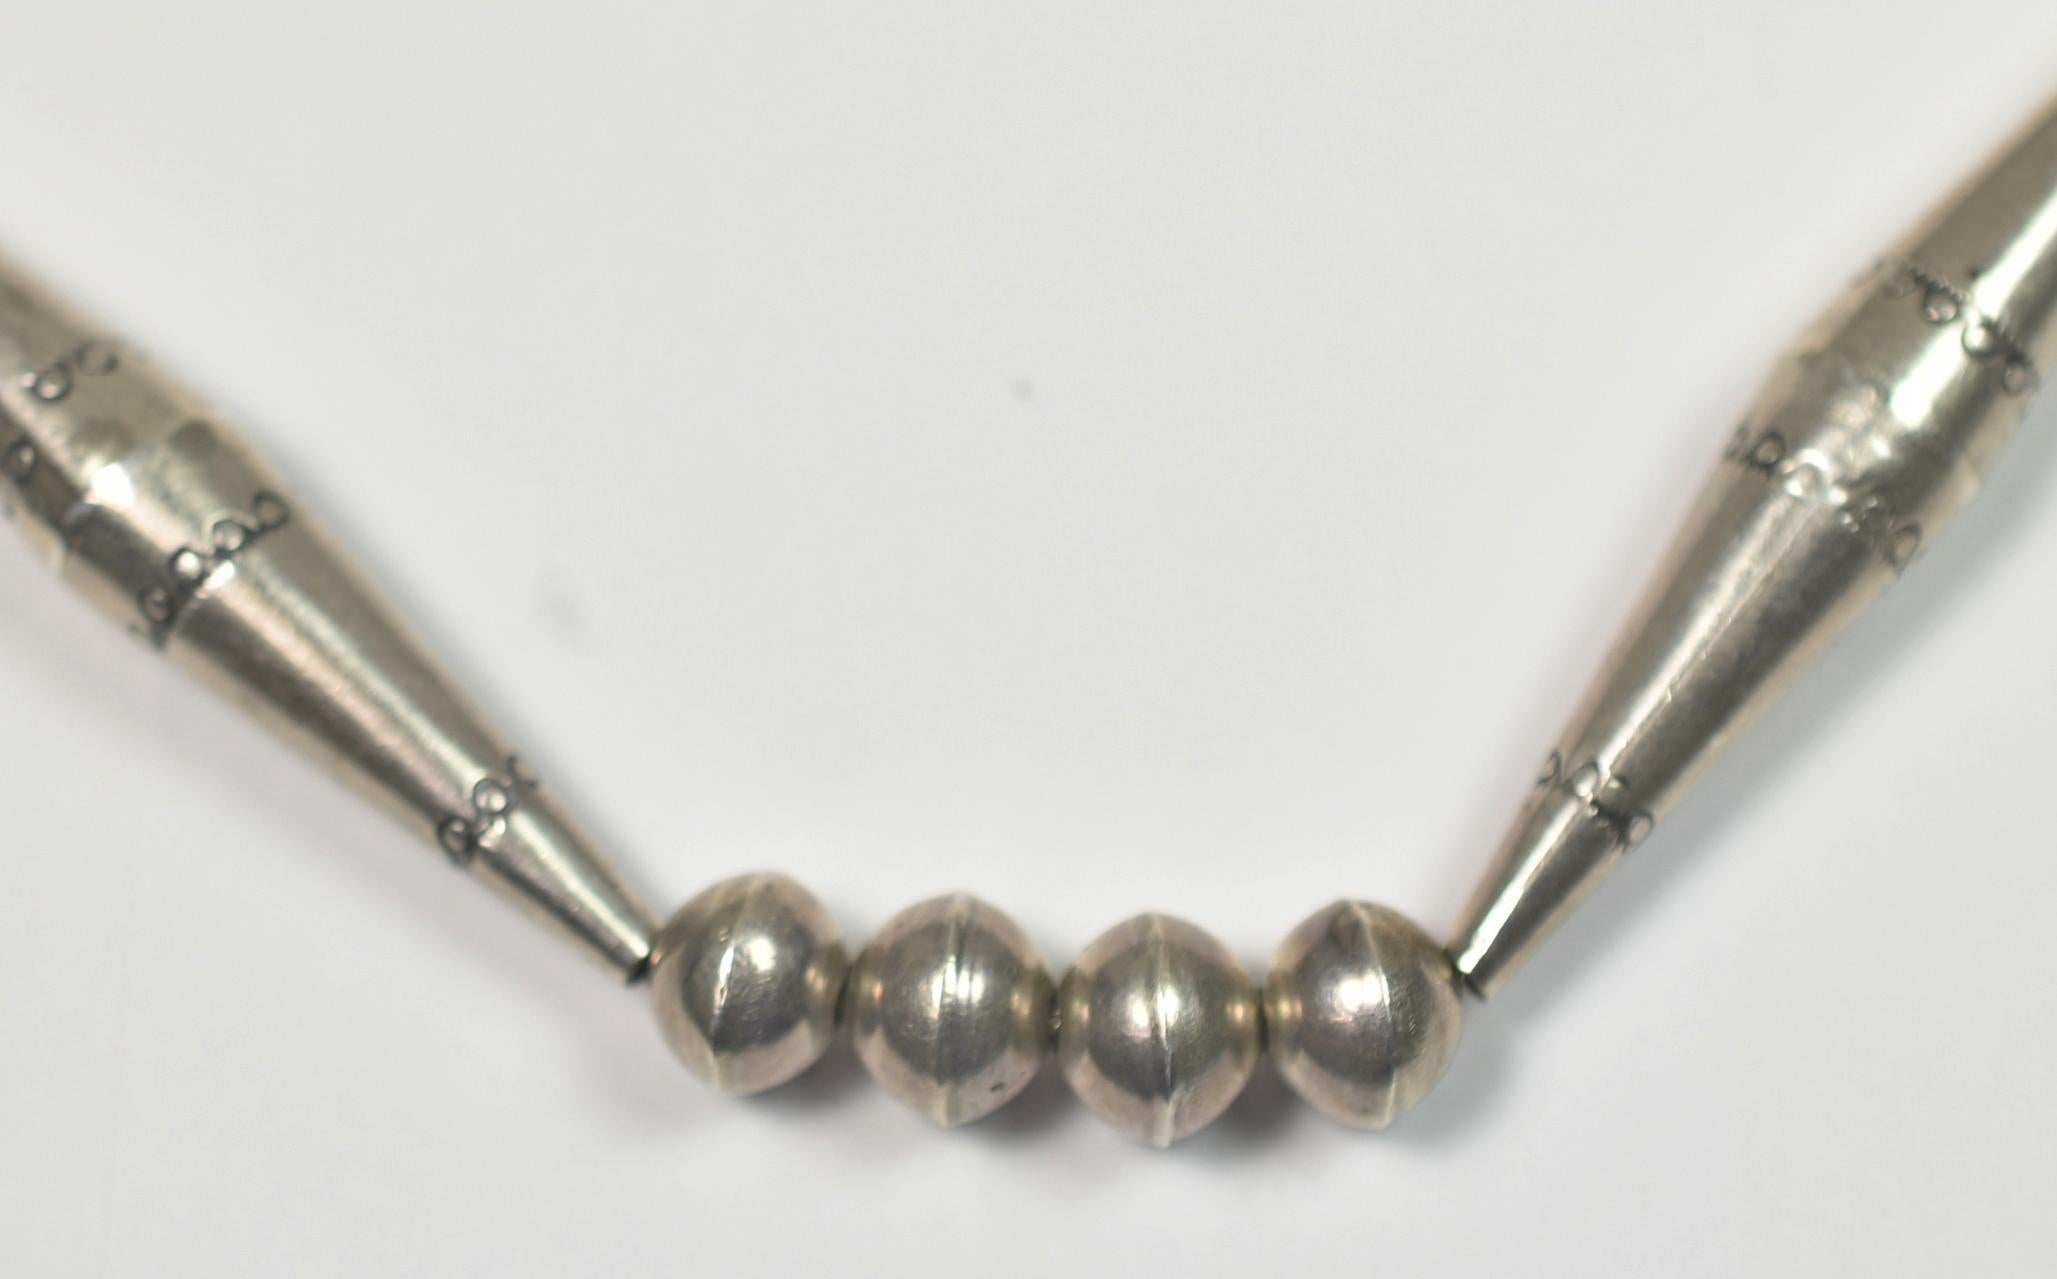 amenadiel necklace amazon